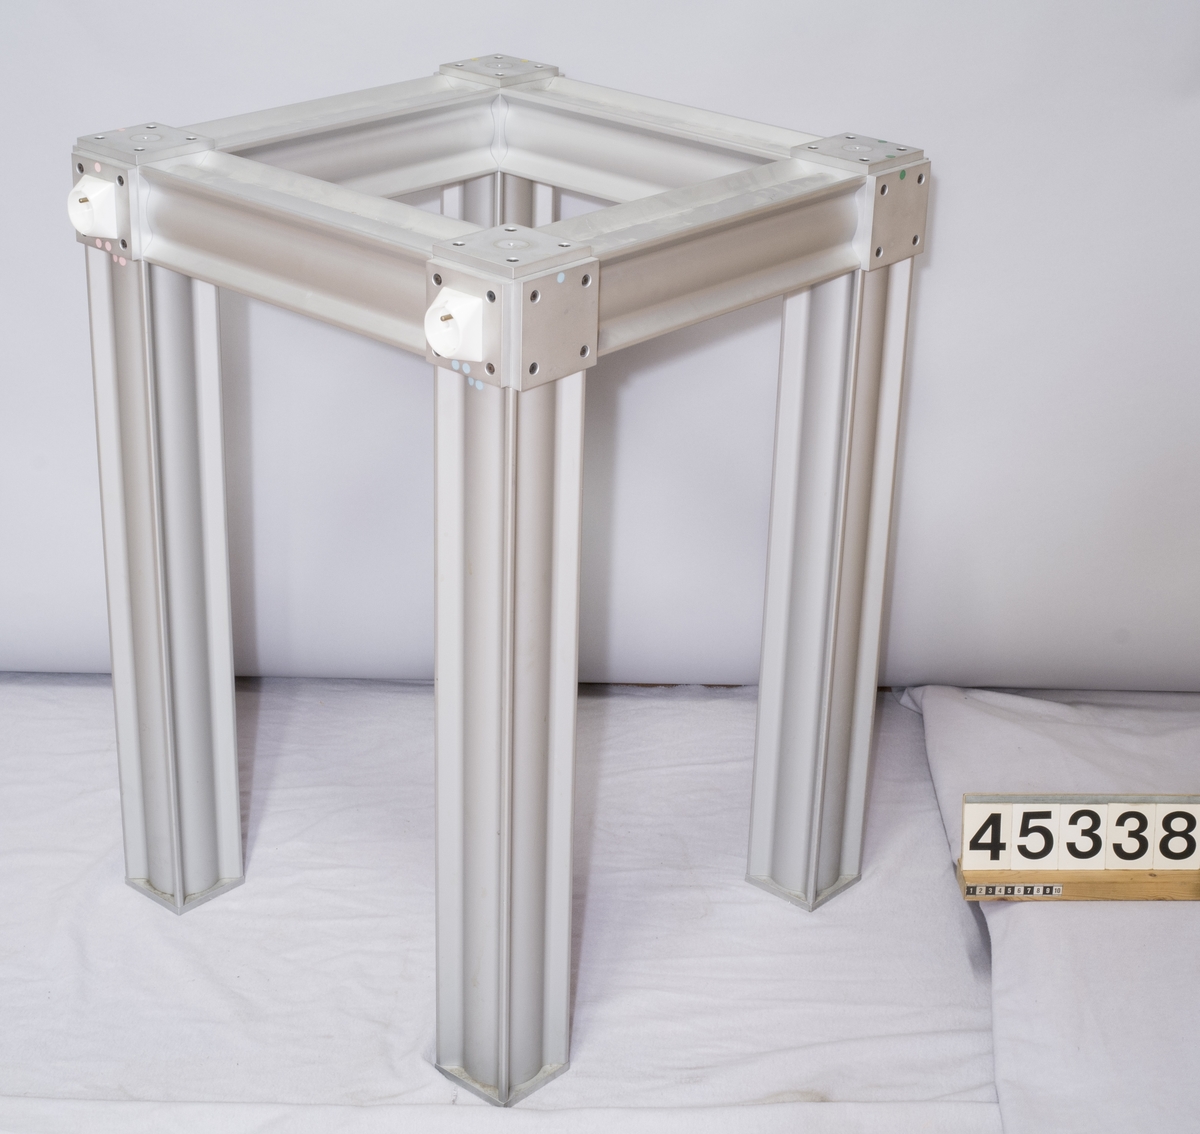 Laboratoriebord med bordskiva av marmor med benställning av aluminiumprofiler. I benställningen finns två eluttag och en anslutning för apparatsladd.